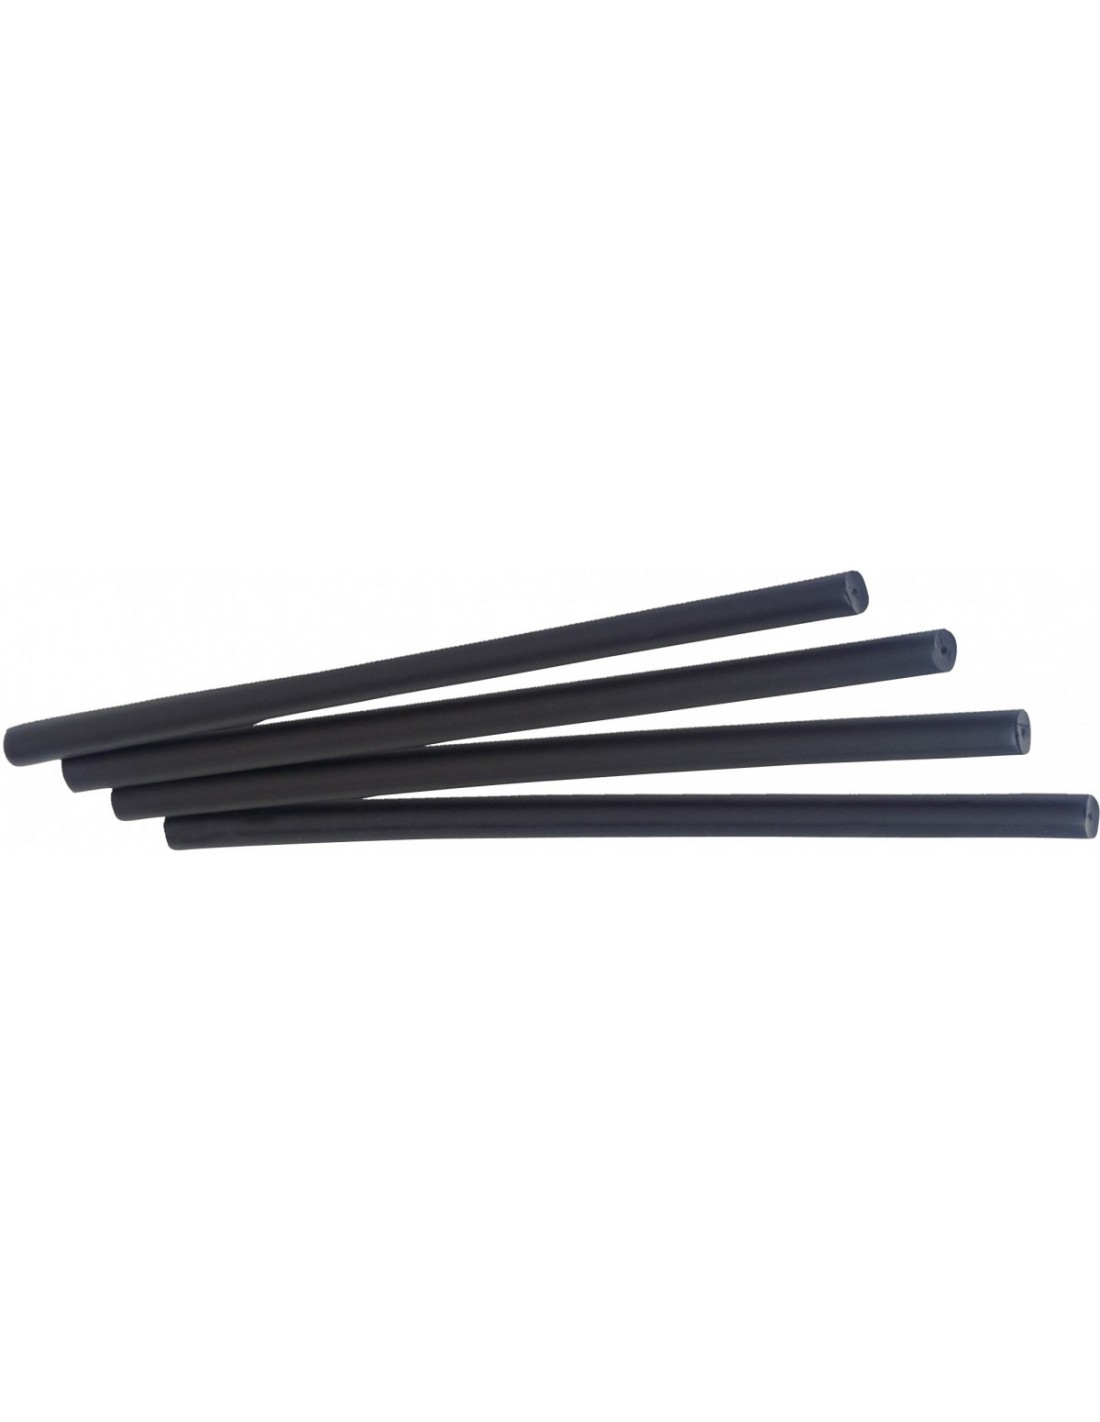 Swix Repair P-stick black, 4pcs. Tools - Belagsreparatur, von Swix